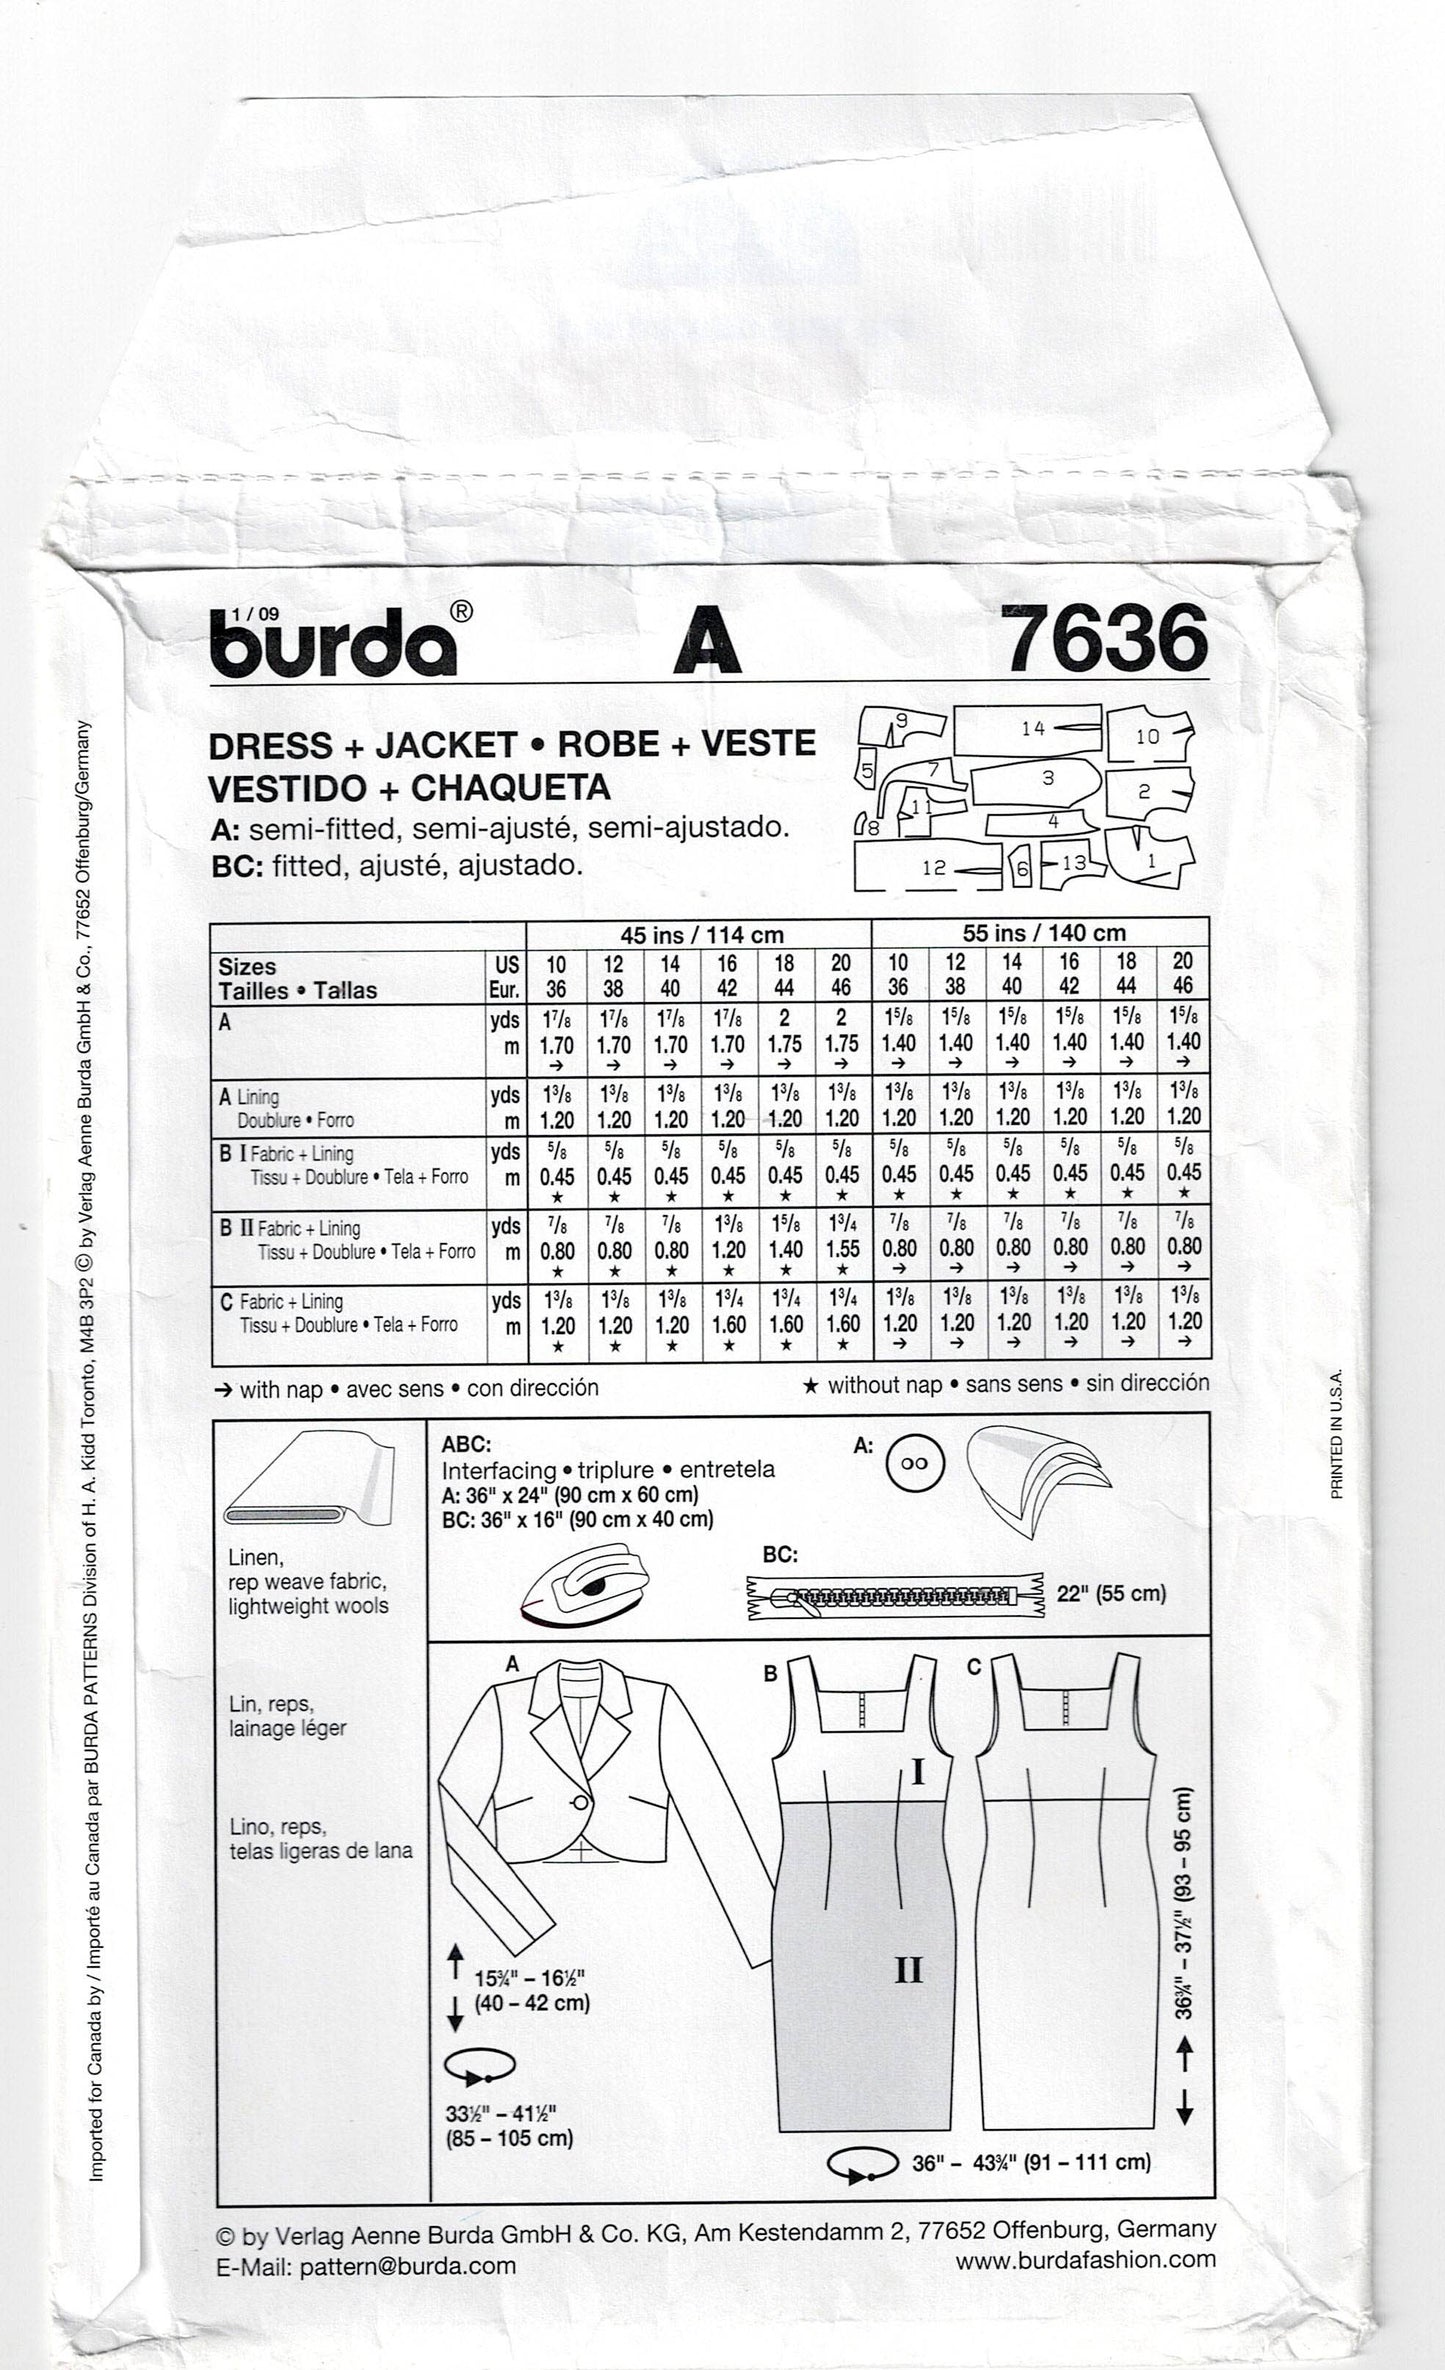 Burda 7636 Womens Square Yoked Sheath Dress & Bolero Jacket Out Of Print Sewing Pattern Sizes 10 - 20 UNCUT Factory Folded